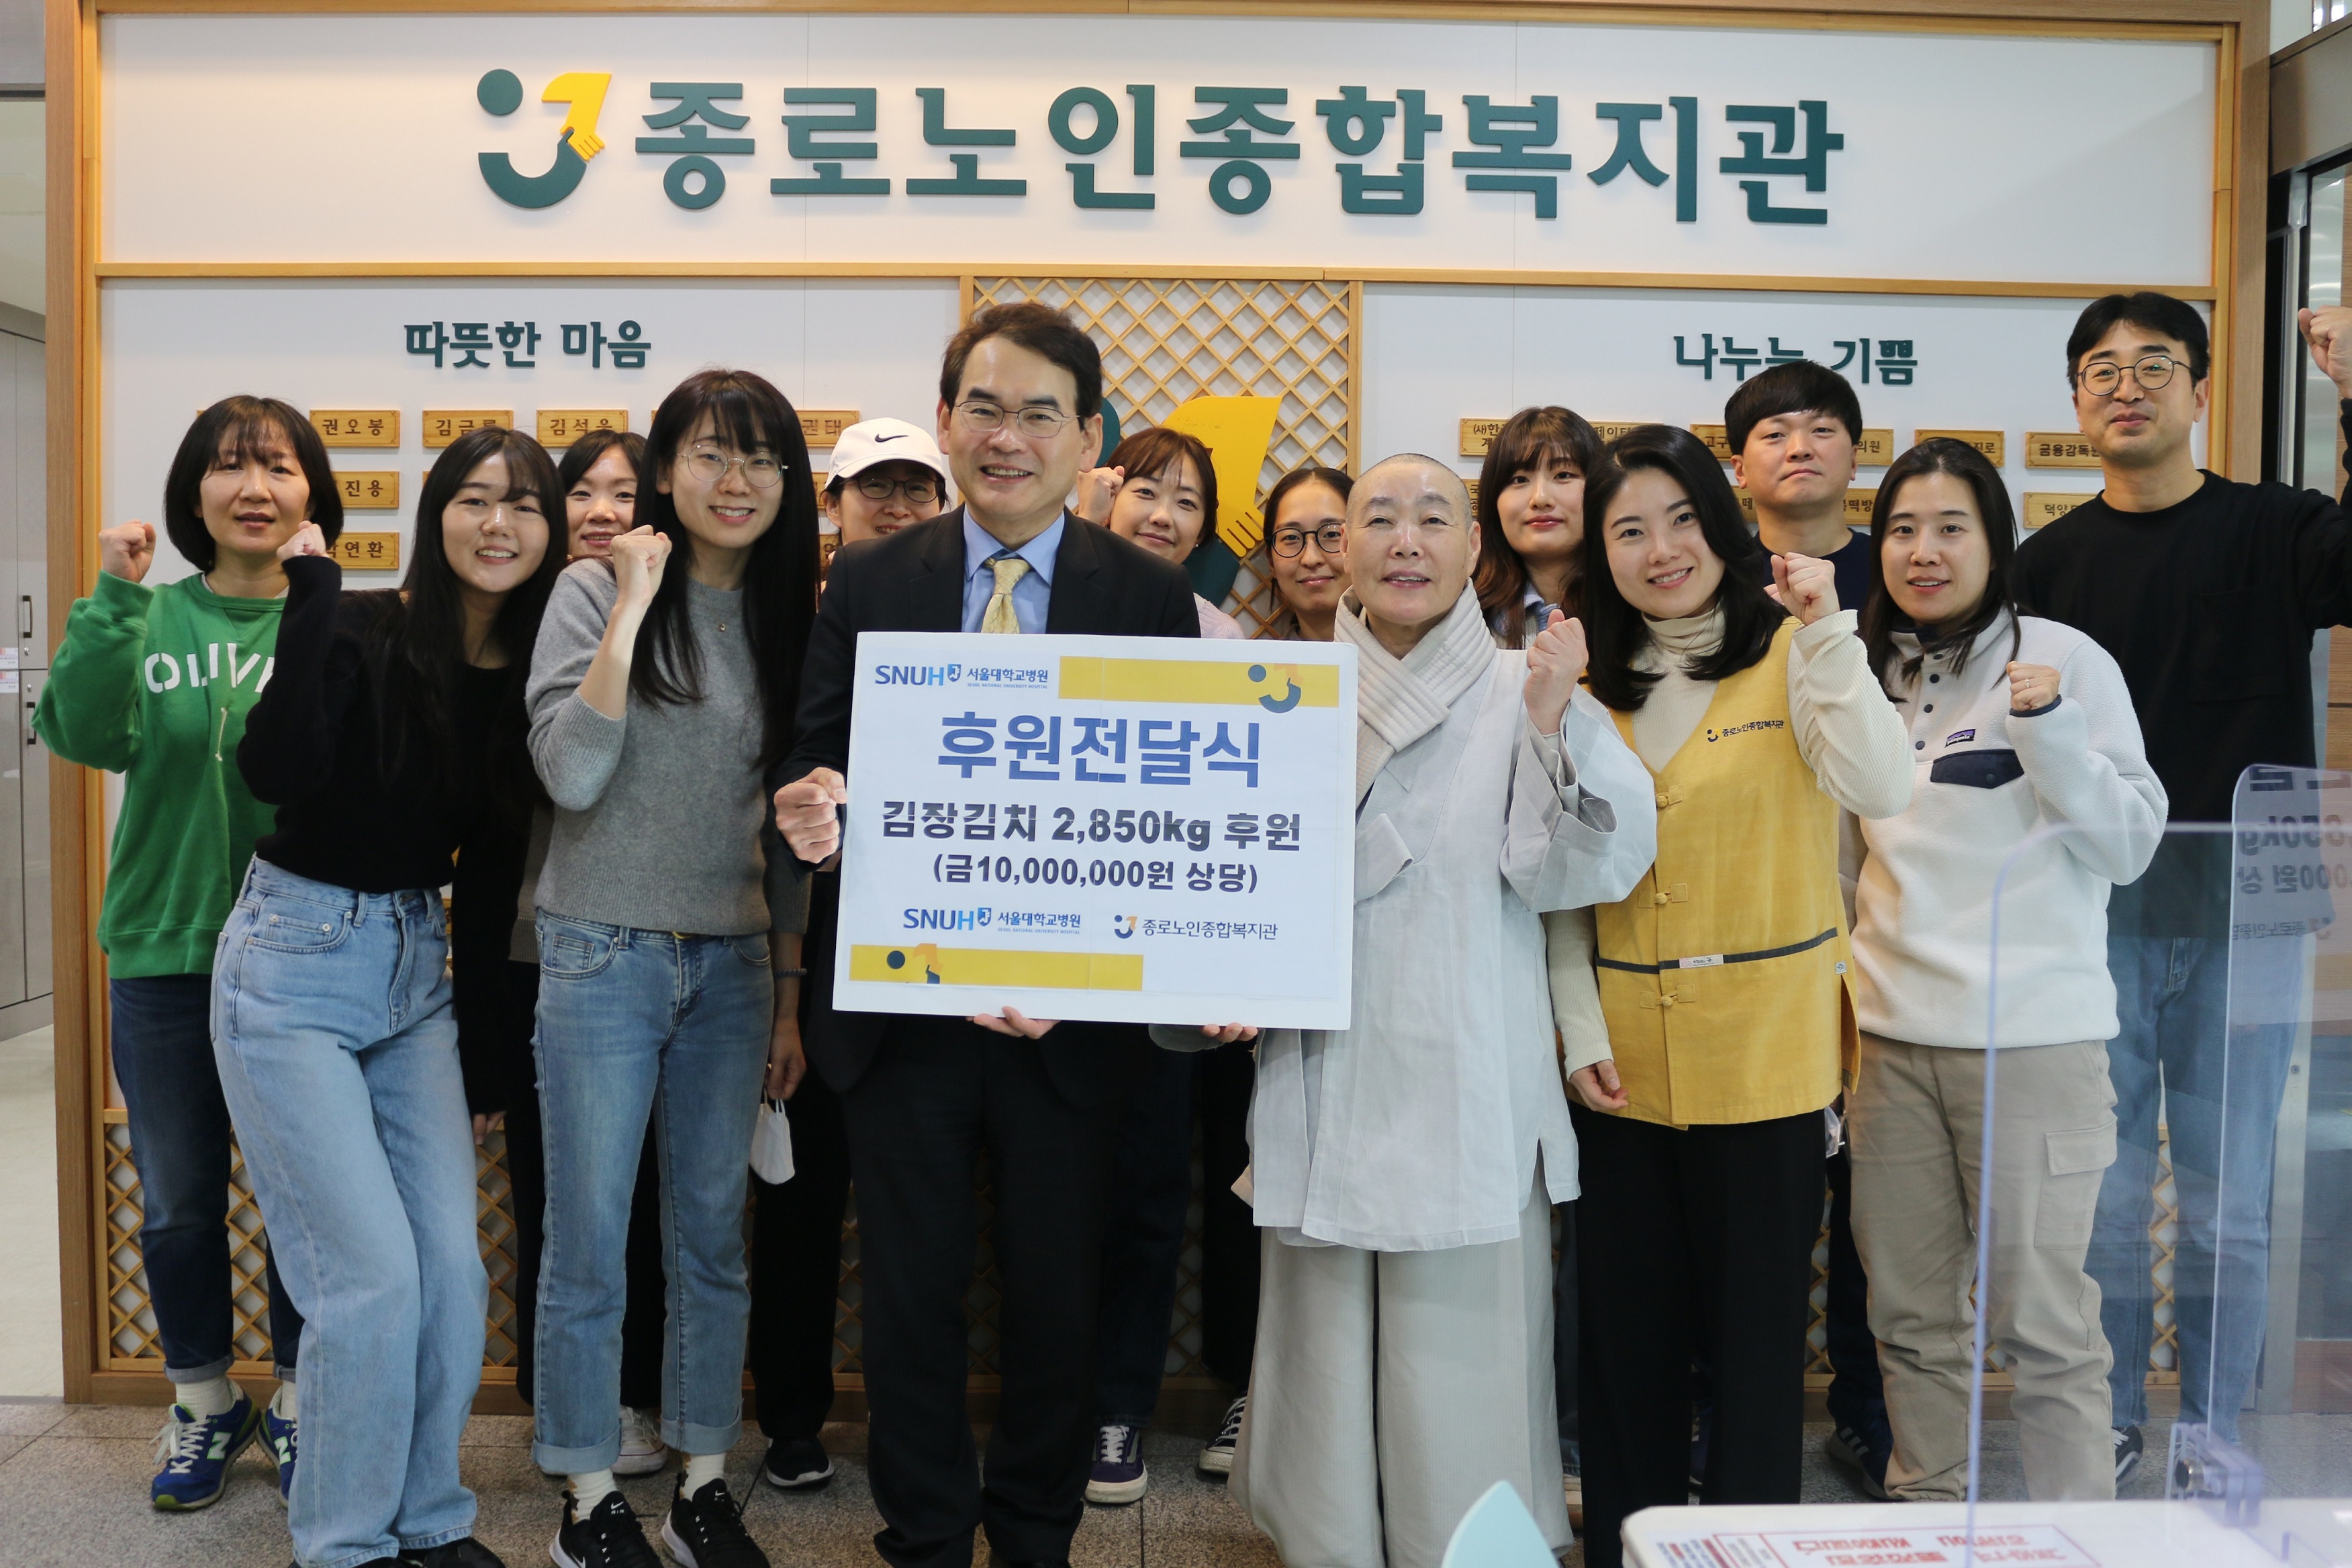  서울대병원 박도중 대외협력실장(왼쪽 6번째), 종로노인종합복지관장 정관스님(왼쪽 9번째)